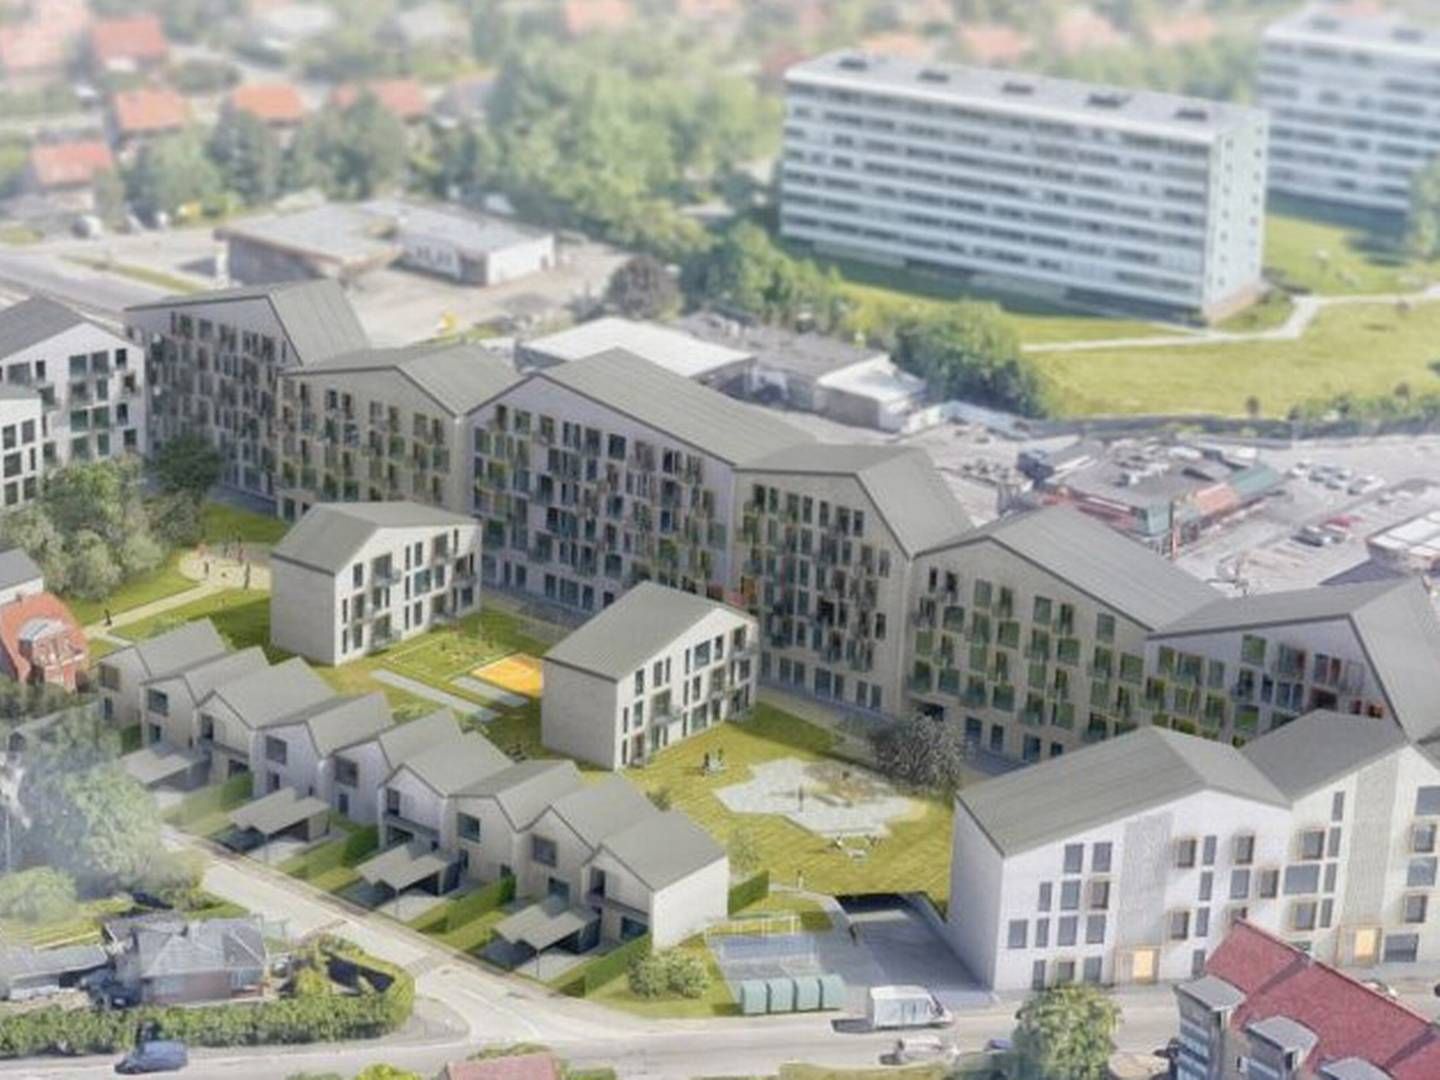 171 private boliger, 15 rækkehuse og 31 almene boliger indgår i projektet, der ligger ud til Randersvej i Aarhus. | Foto: PR-visualisering: Eriksen Arkitekter